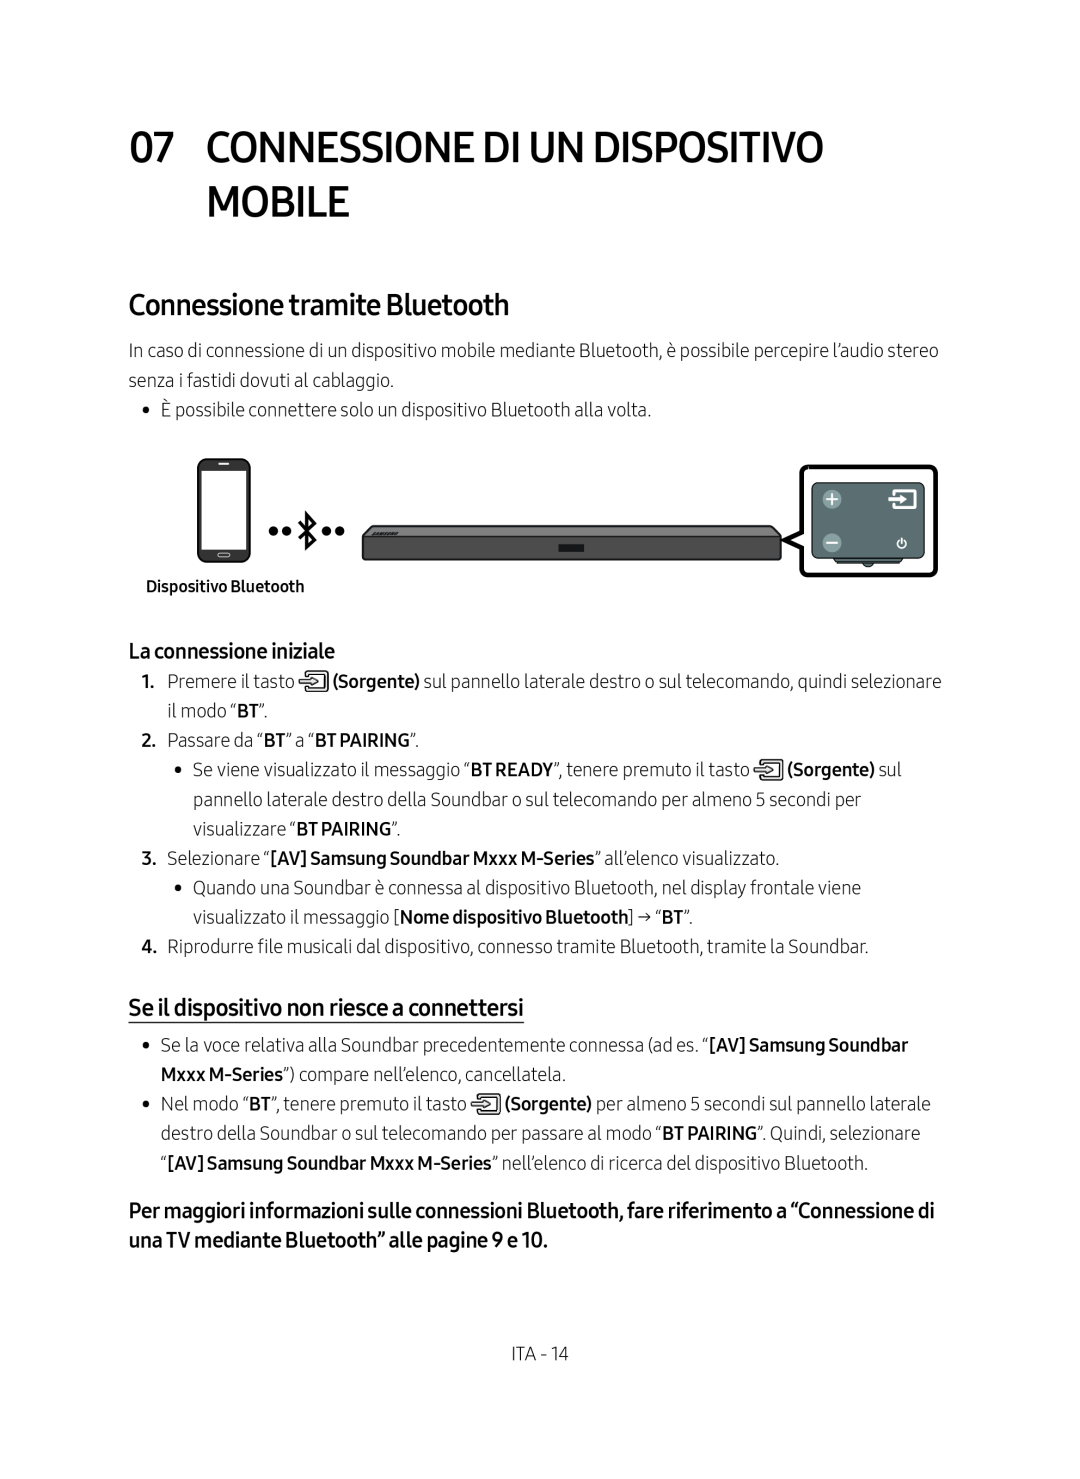 Samsung HW-M450/ZF manual Connessione Di Un Dispositivo Mobile, Connessione tramite Bluetooth, La connessione iniziale 